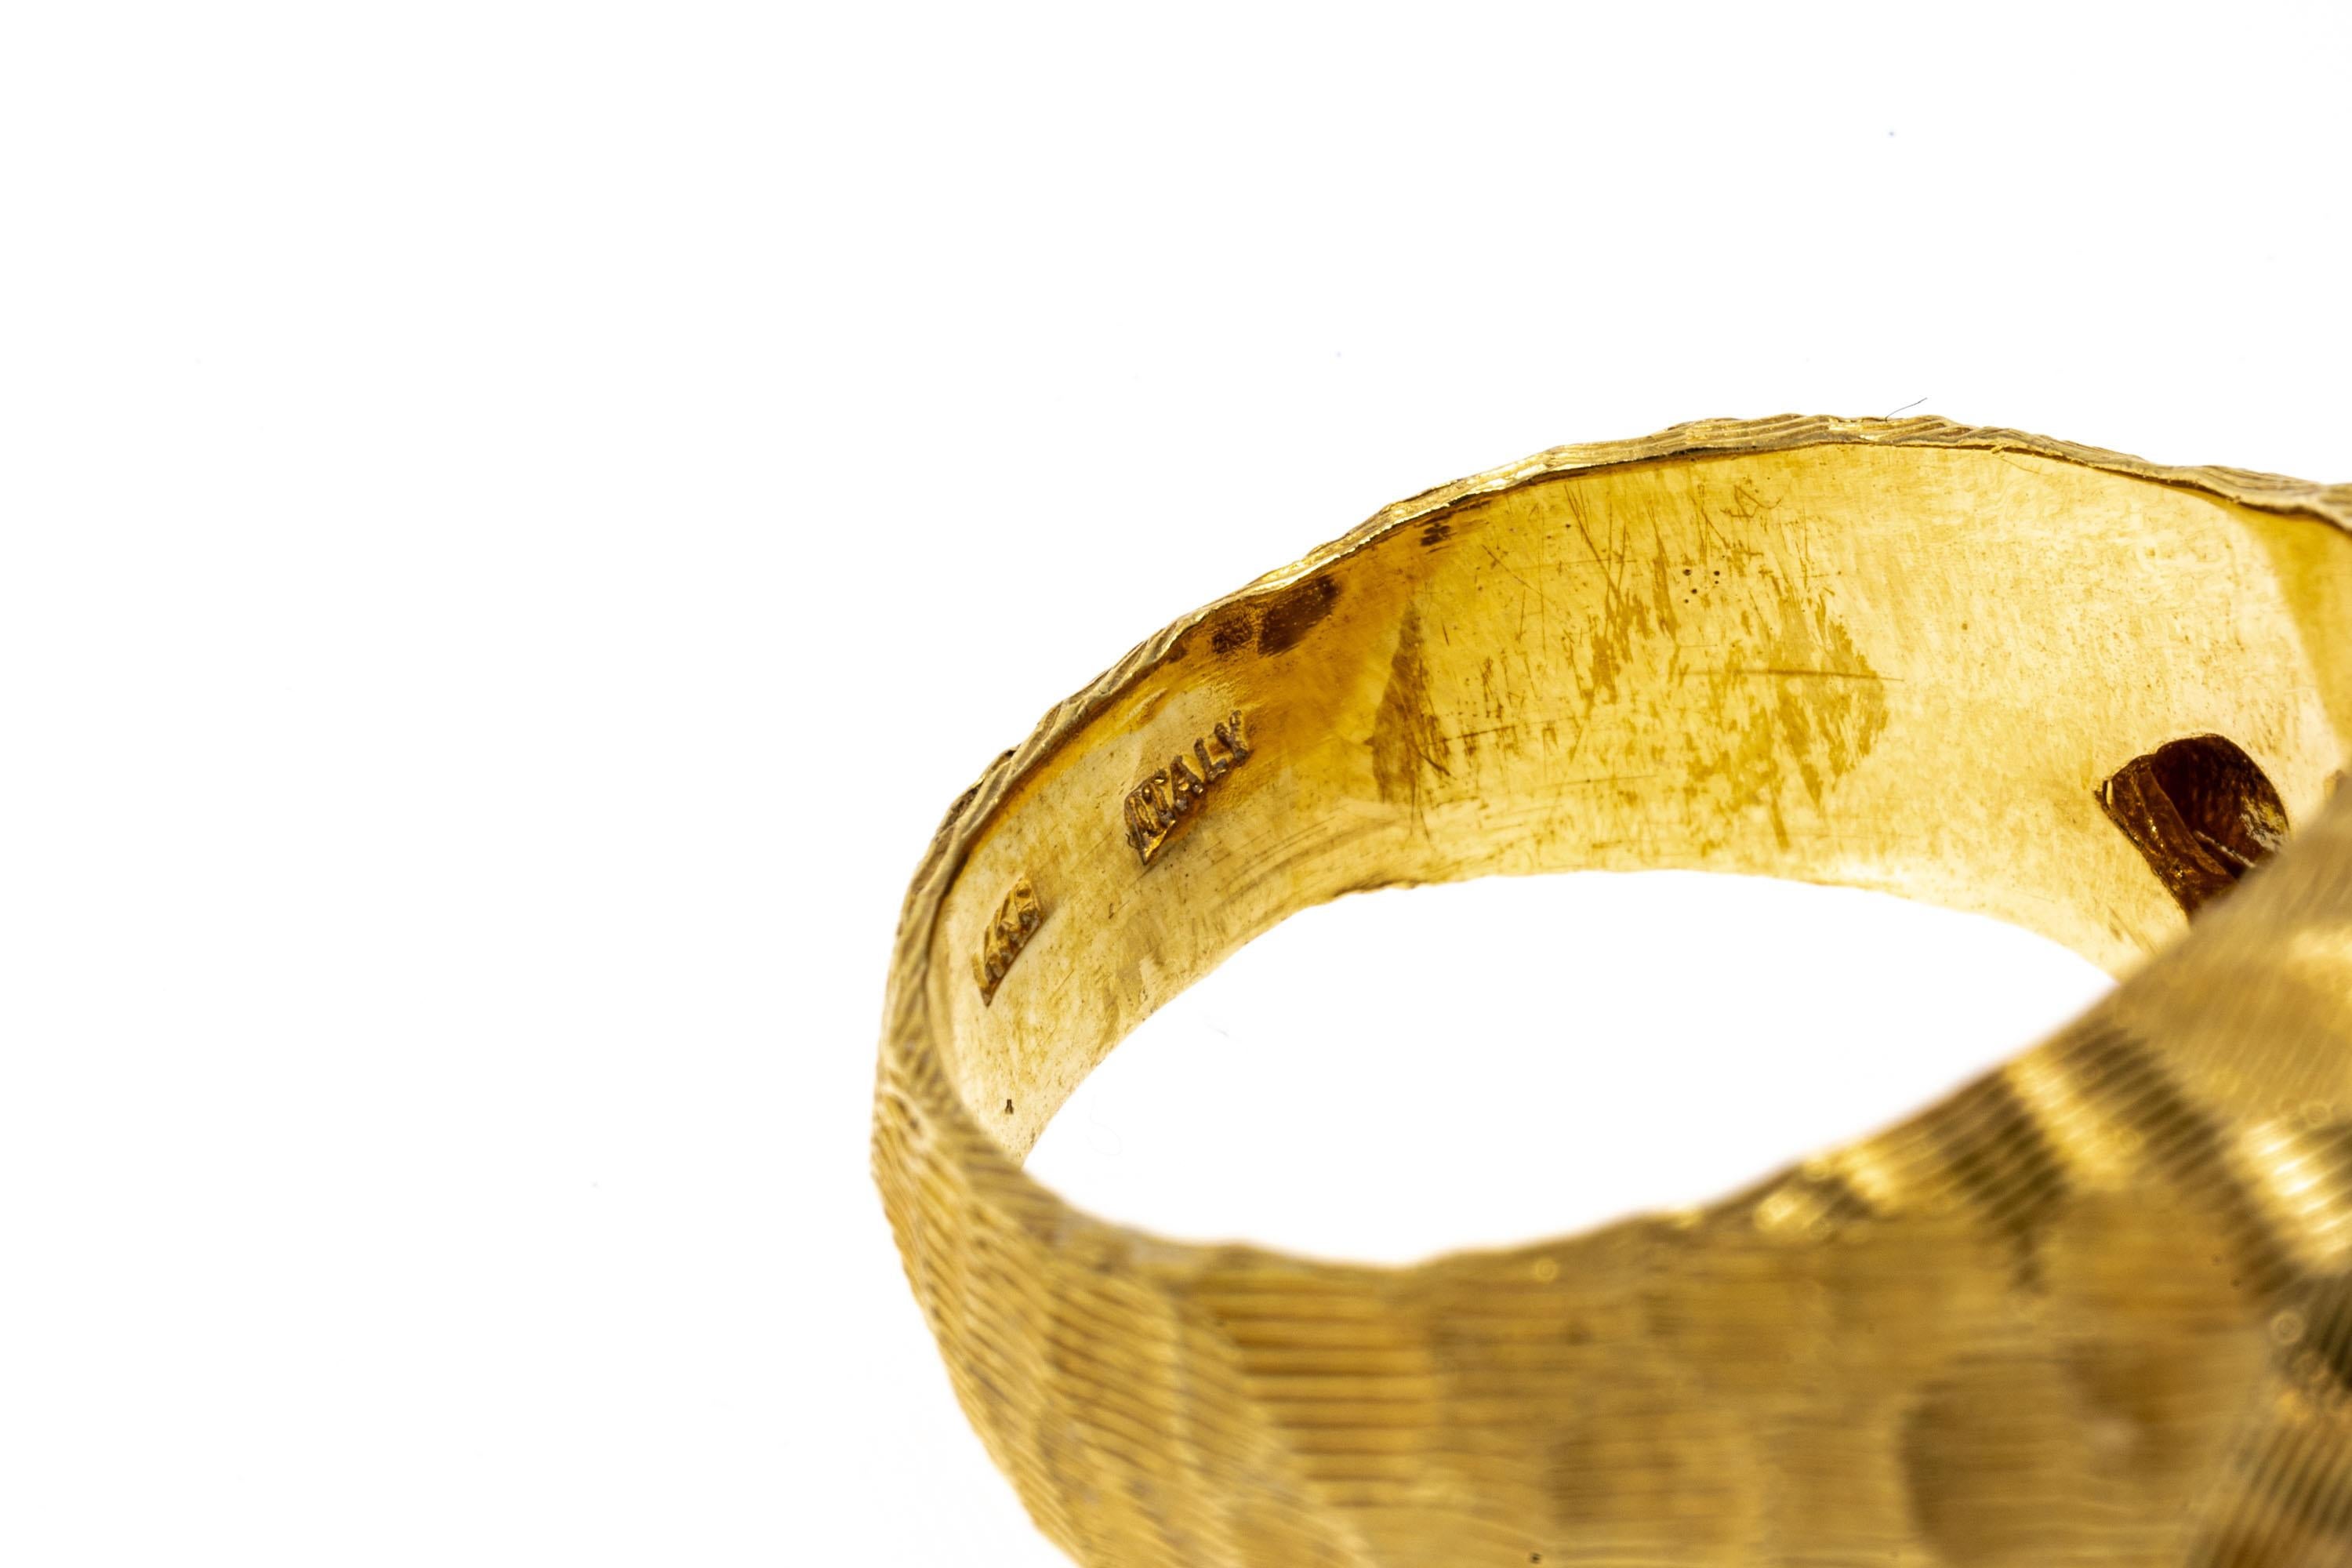 ring aus 14k Gelbgold. Dieser ungewöhnliche Ring aus Gelbgold hat ein freies, leicht konkaves Profil mit einem gehämmerten Muster und ist durchgehend mit einem feinen Rillenmuster verziert, auch an den Schultern und am Schaft.
Markierungen: